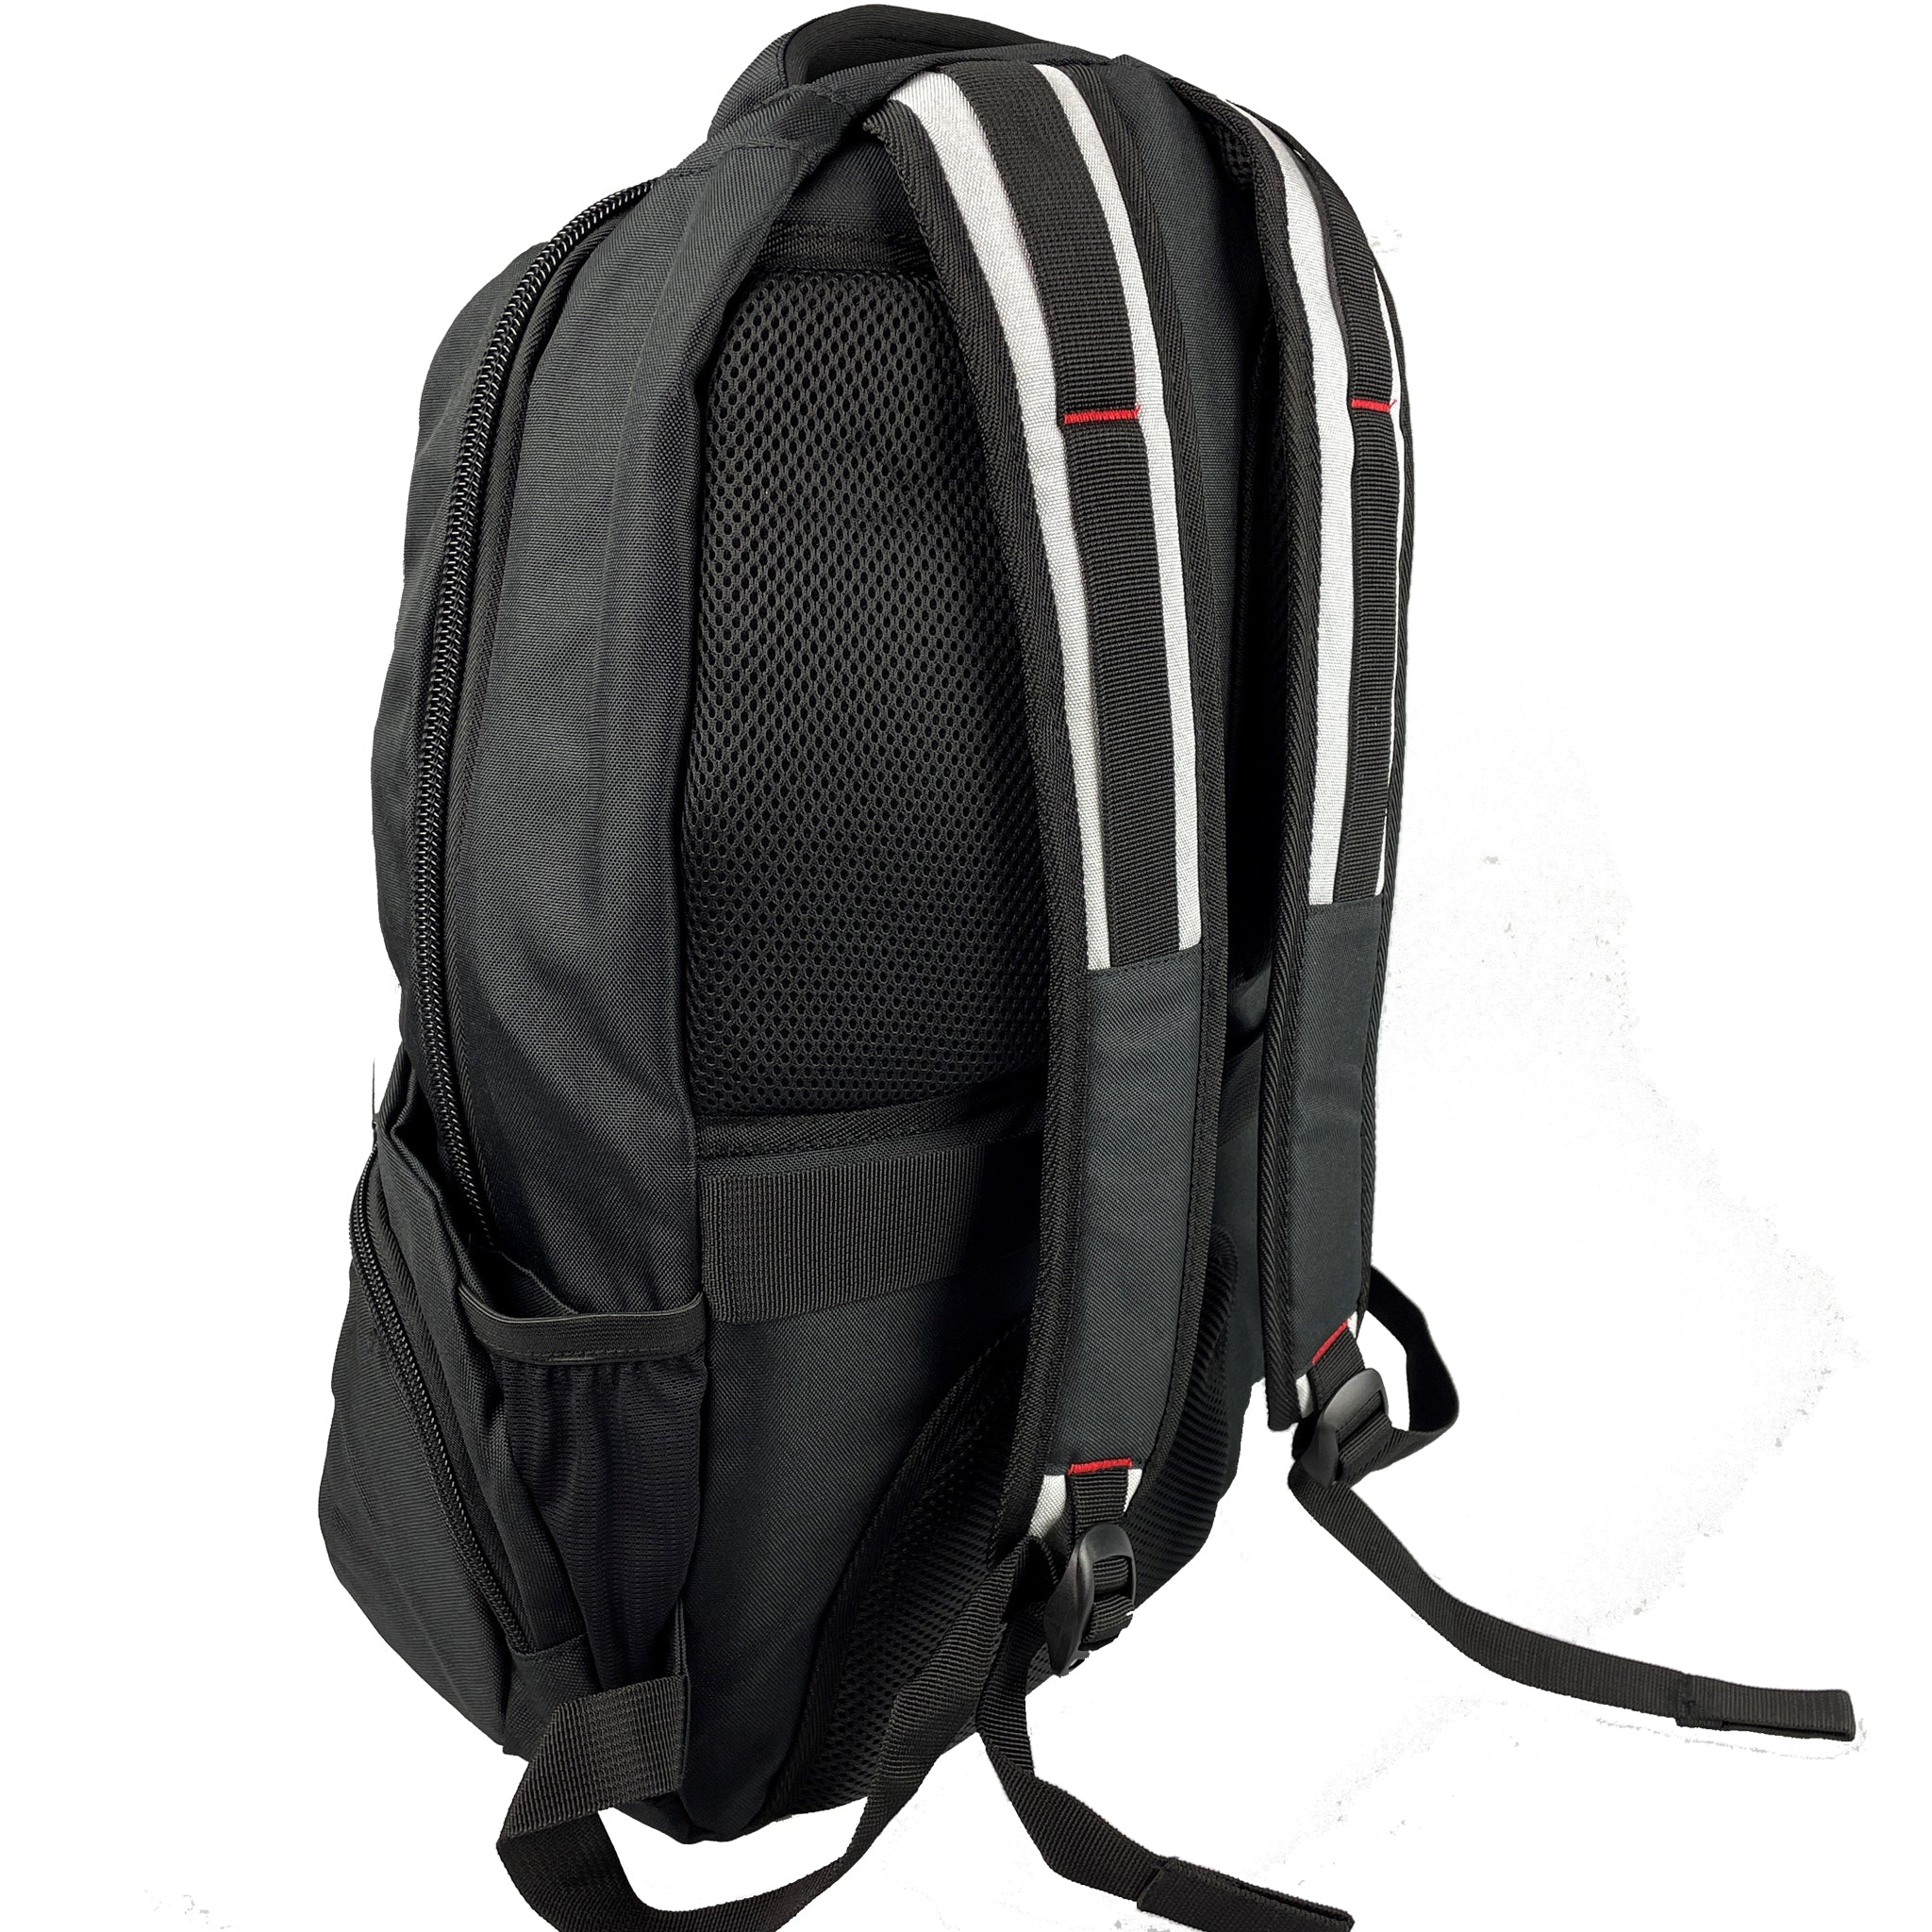 PADI Backpack | Contoured Padded back and shoulder straps